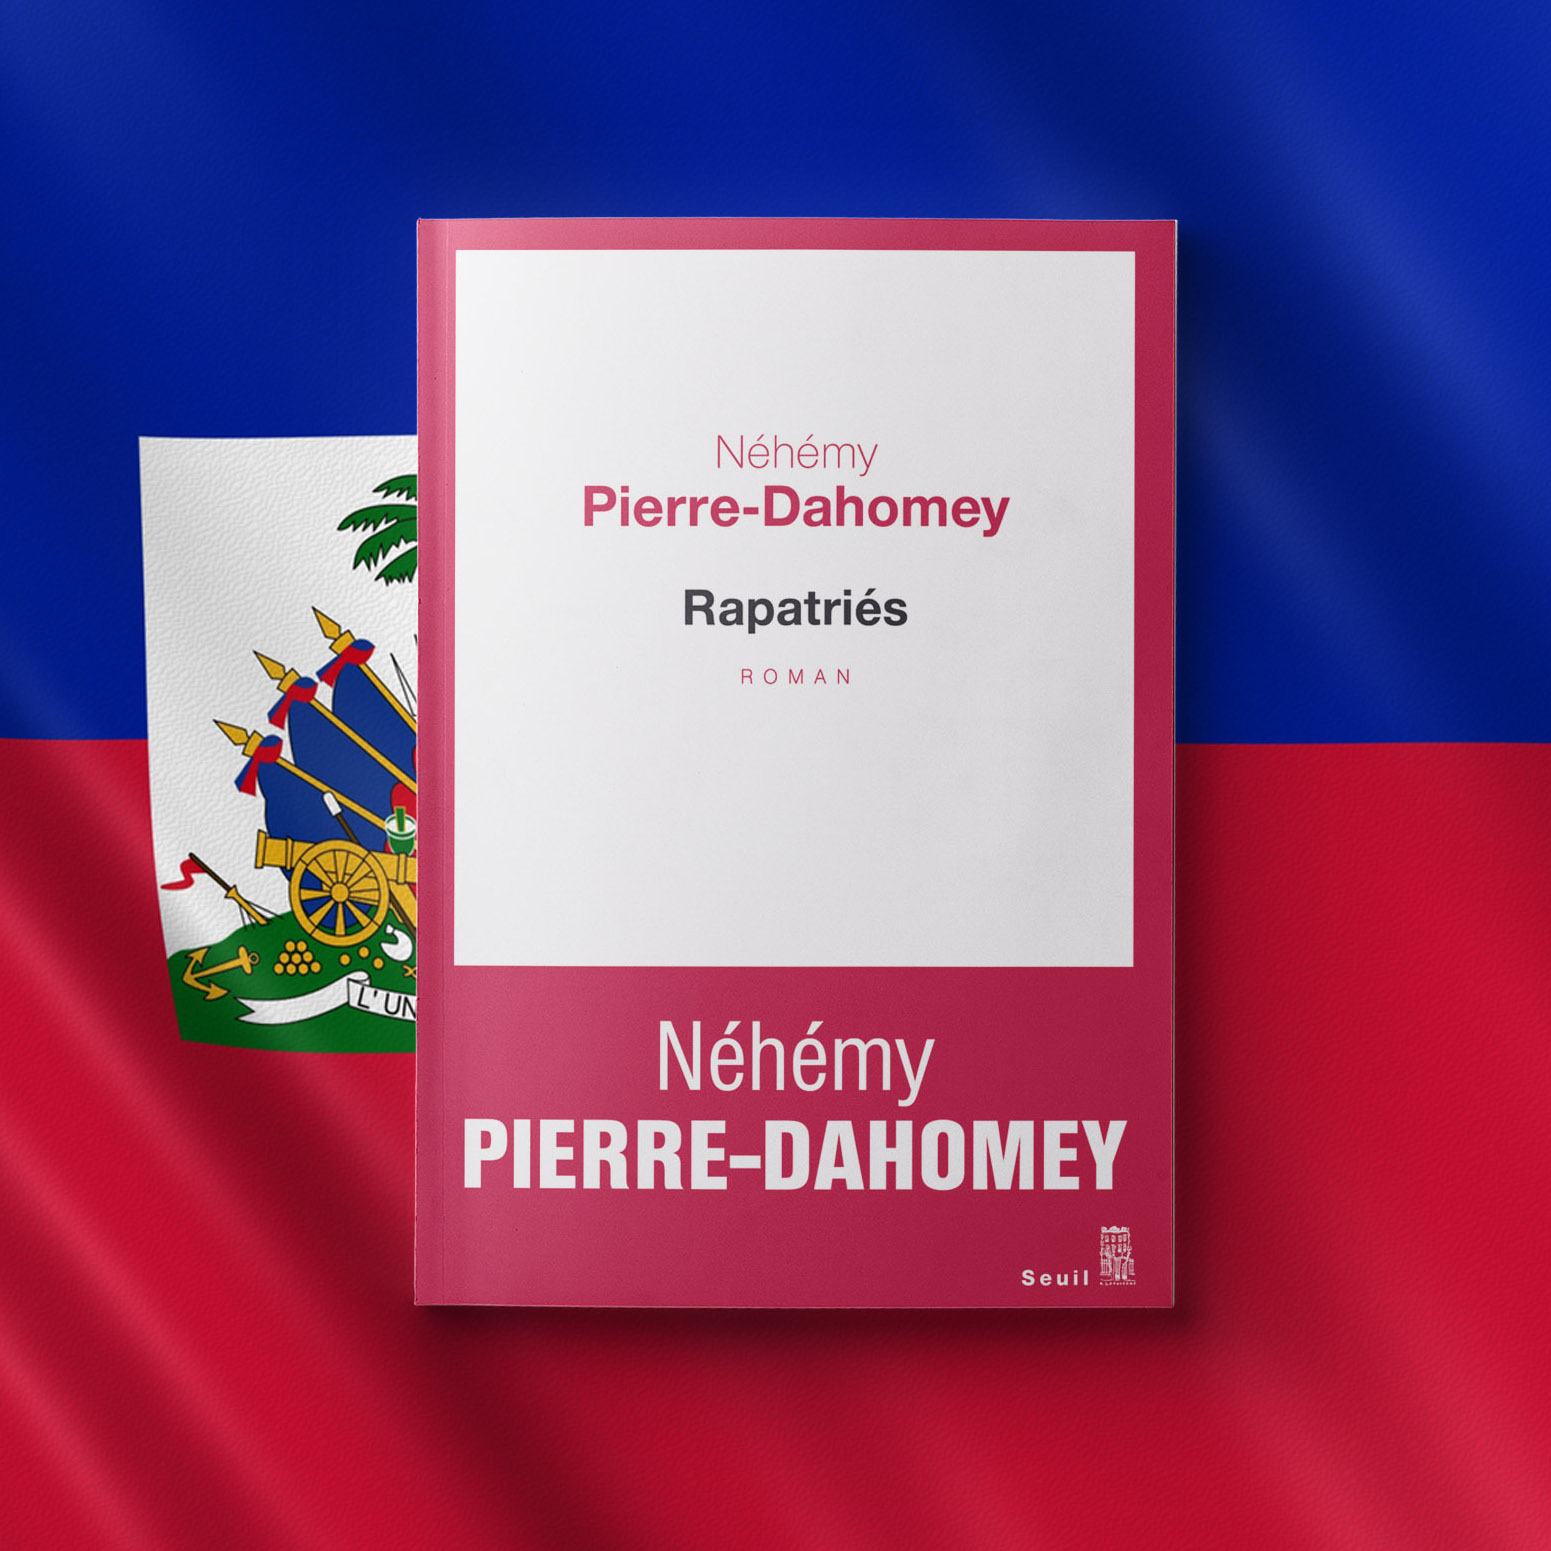 Repatriates by Néhémy Pierre-Dahomey